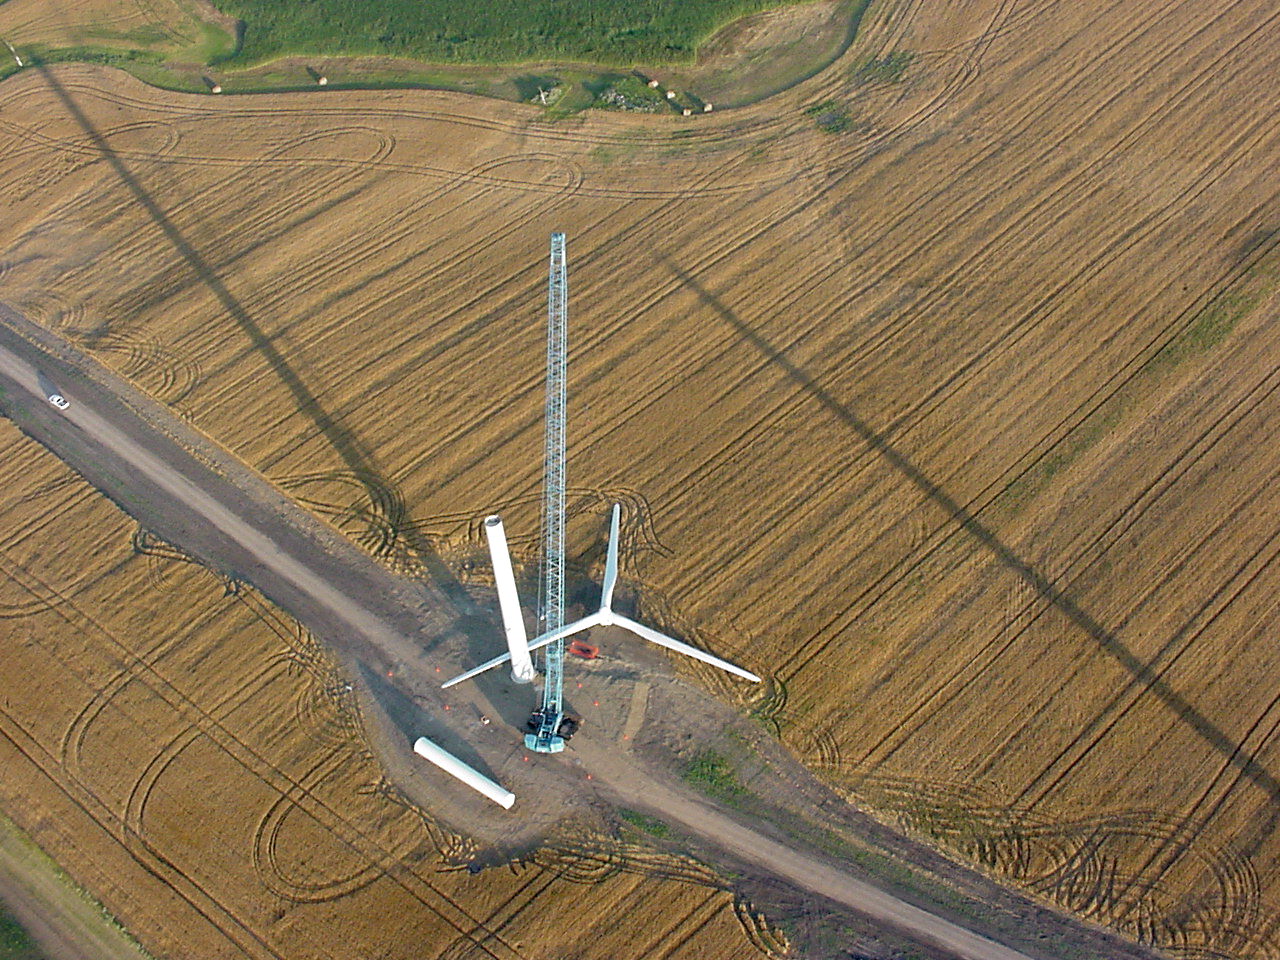 Wind farm siting